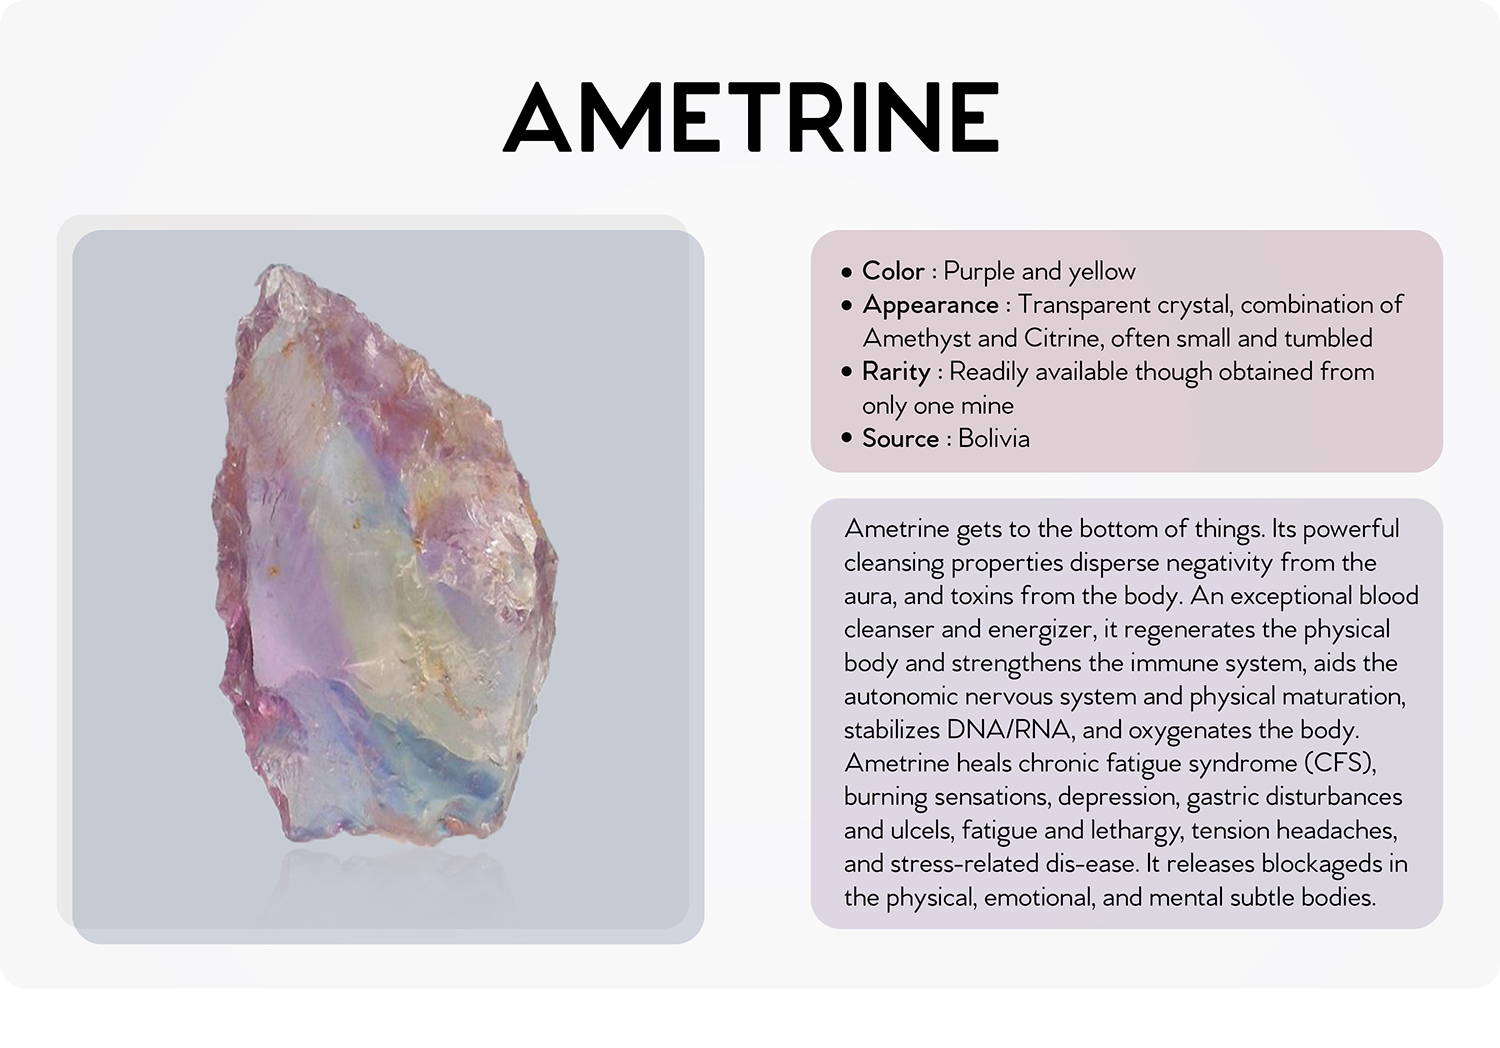 Ametrine